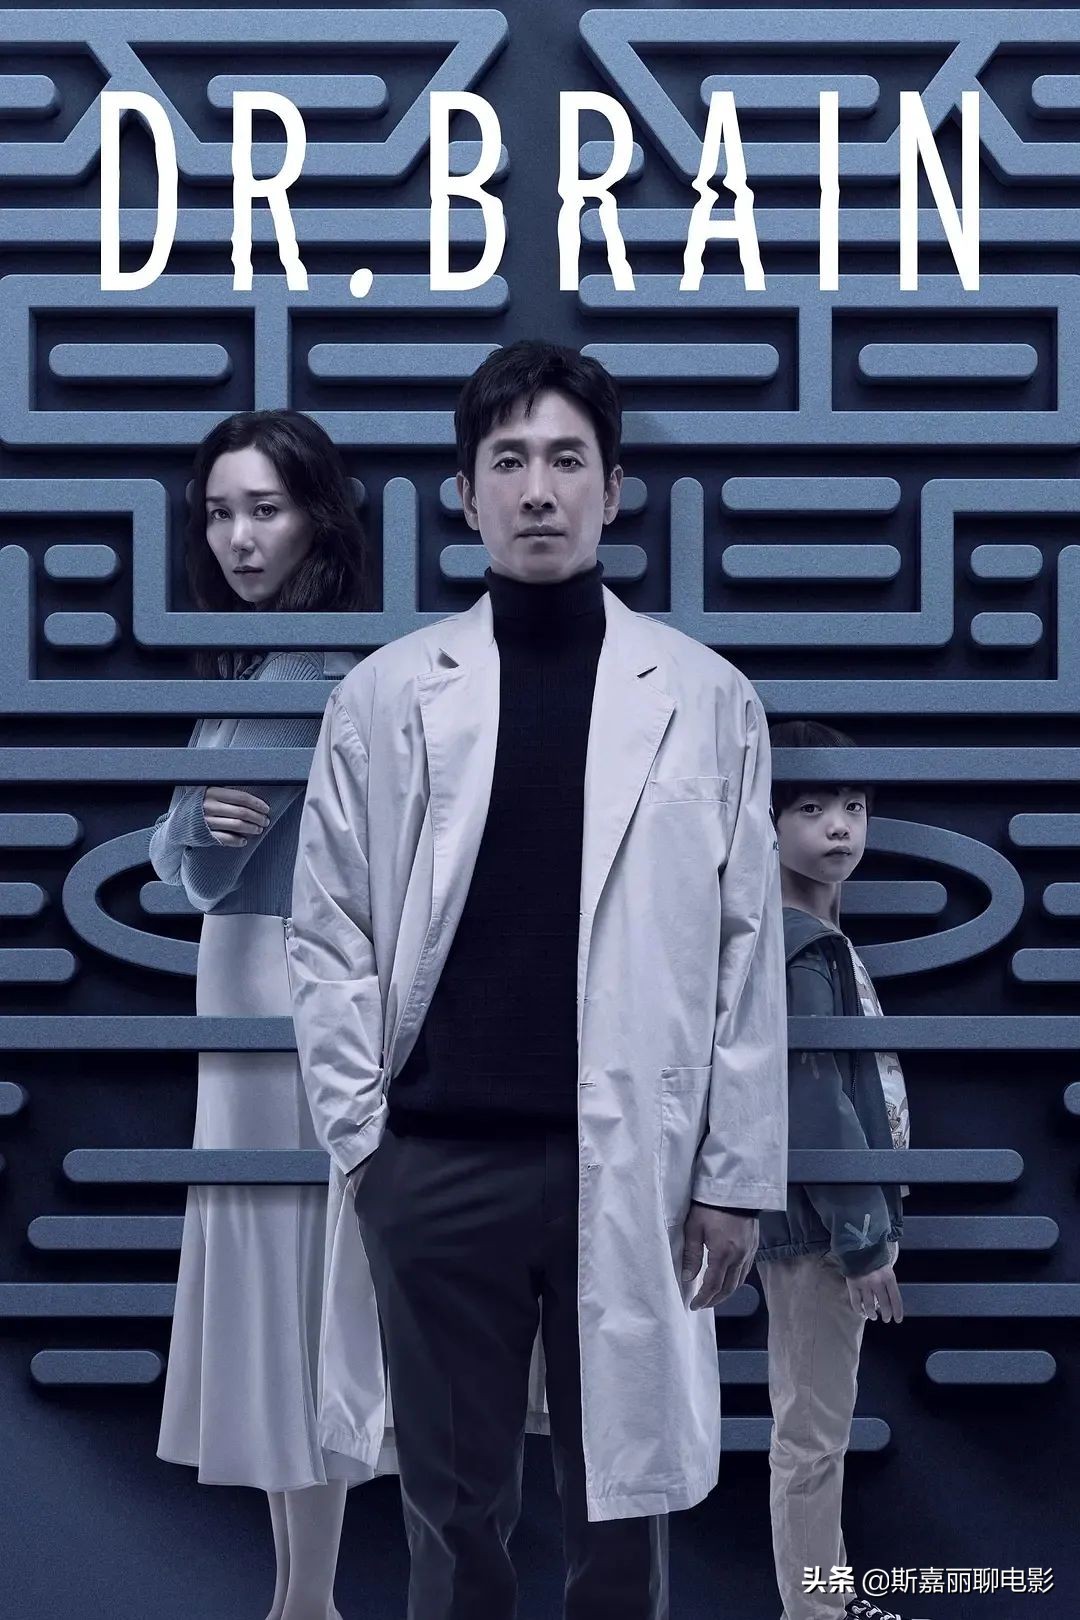 苹果投资的首部韩剧，为什么有《秘密森林》和《窥探》的影子？